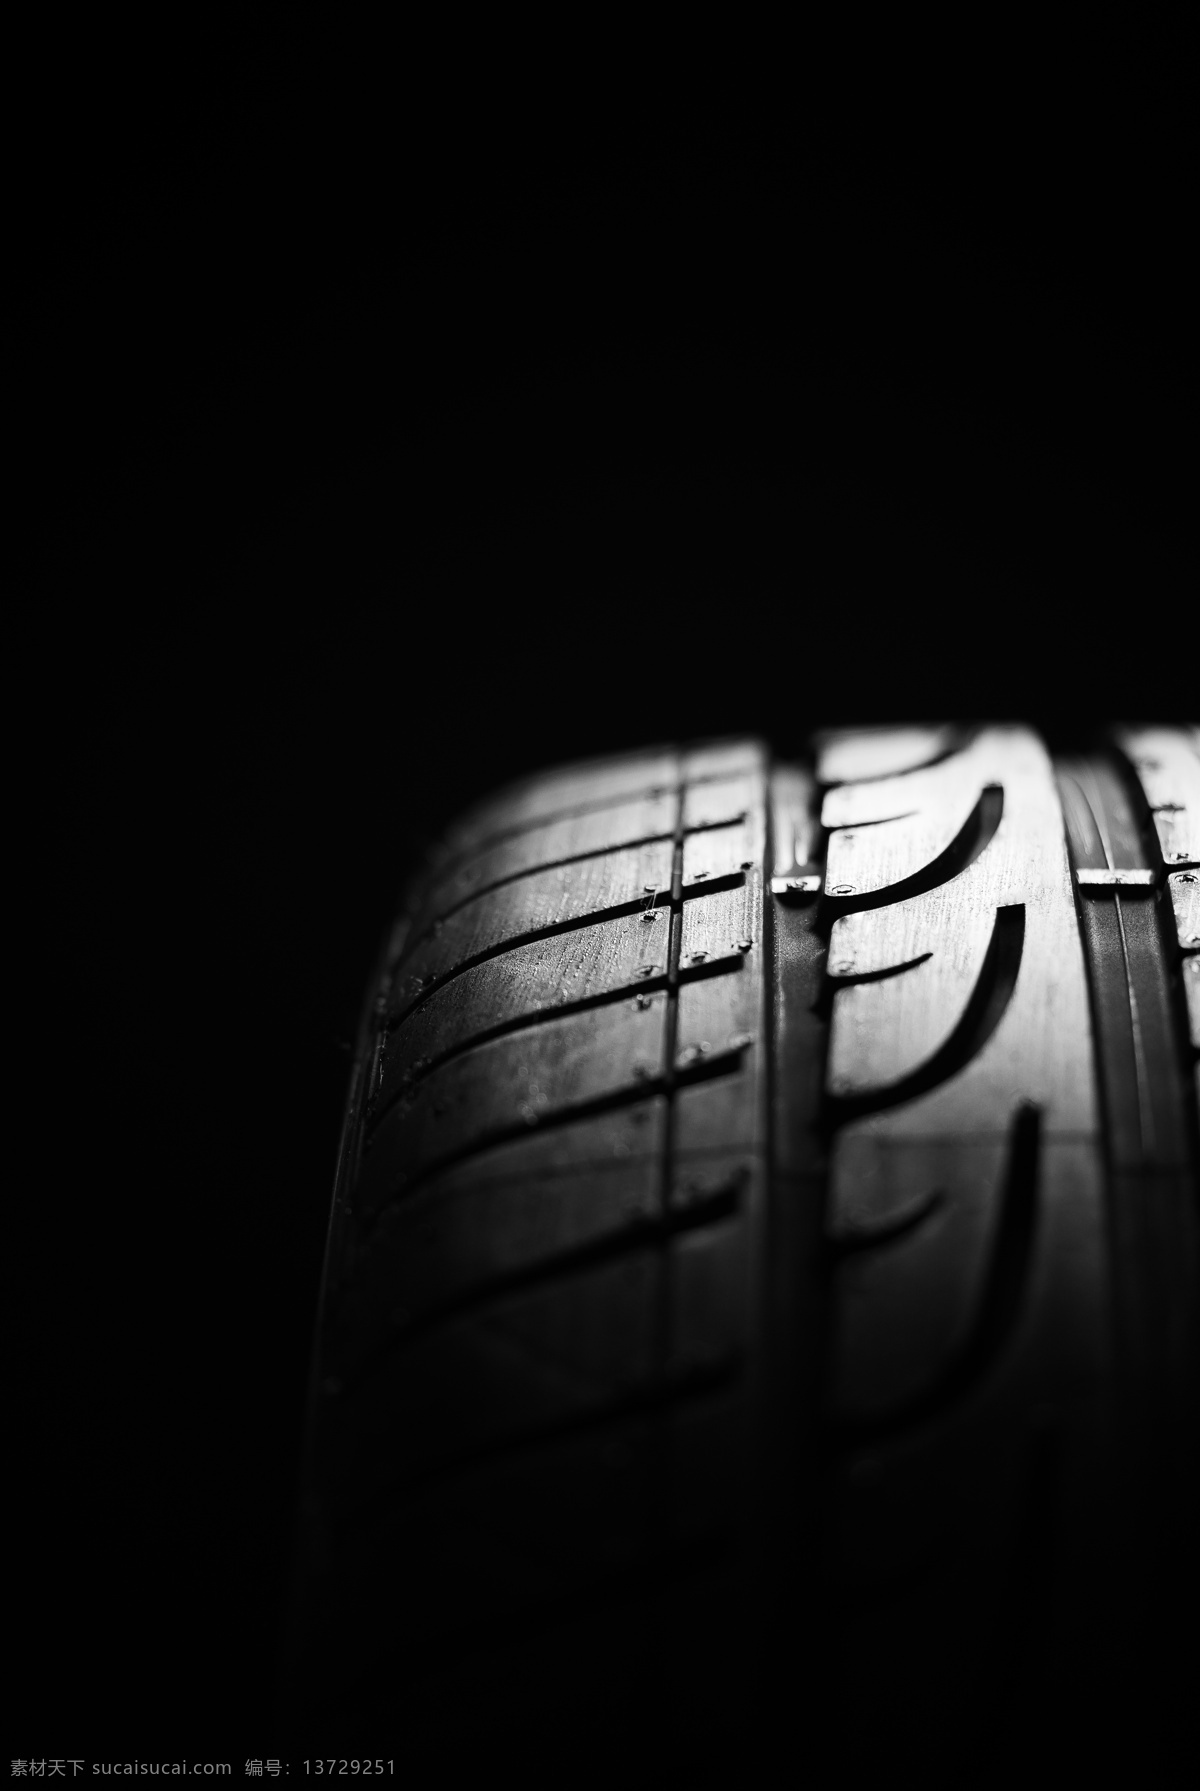 轮胎图片 轮胎 汽车 汽车轮胎 米其林 纹理 生活百科 生活素材